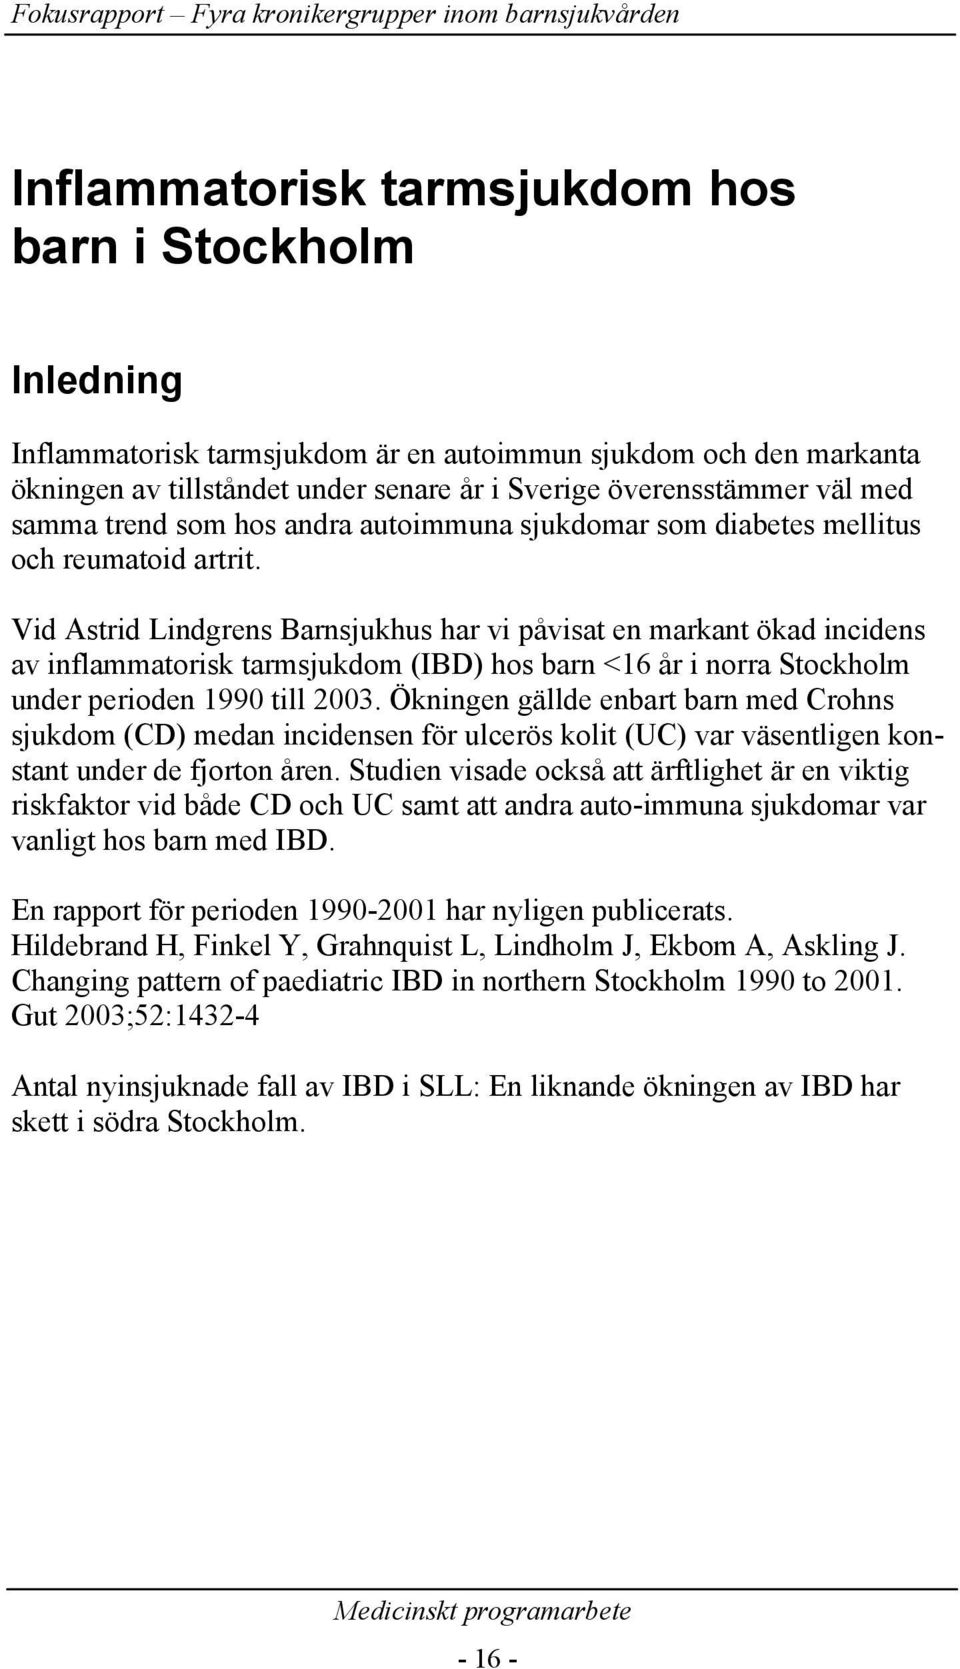 Vid Astrid Lindgrens Barnsjukhus har vi påvisat en markant ökad incidens av inflammatorisk tarmsjukdom (IBD) hos barn <16 år i norra Stockholm under perioden 1990 till 2003.